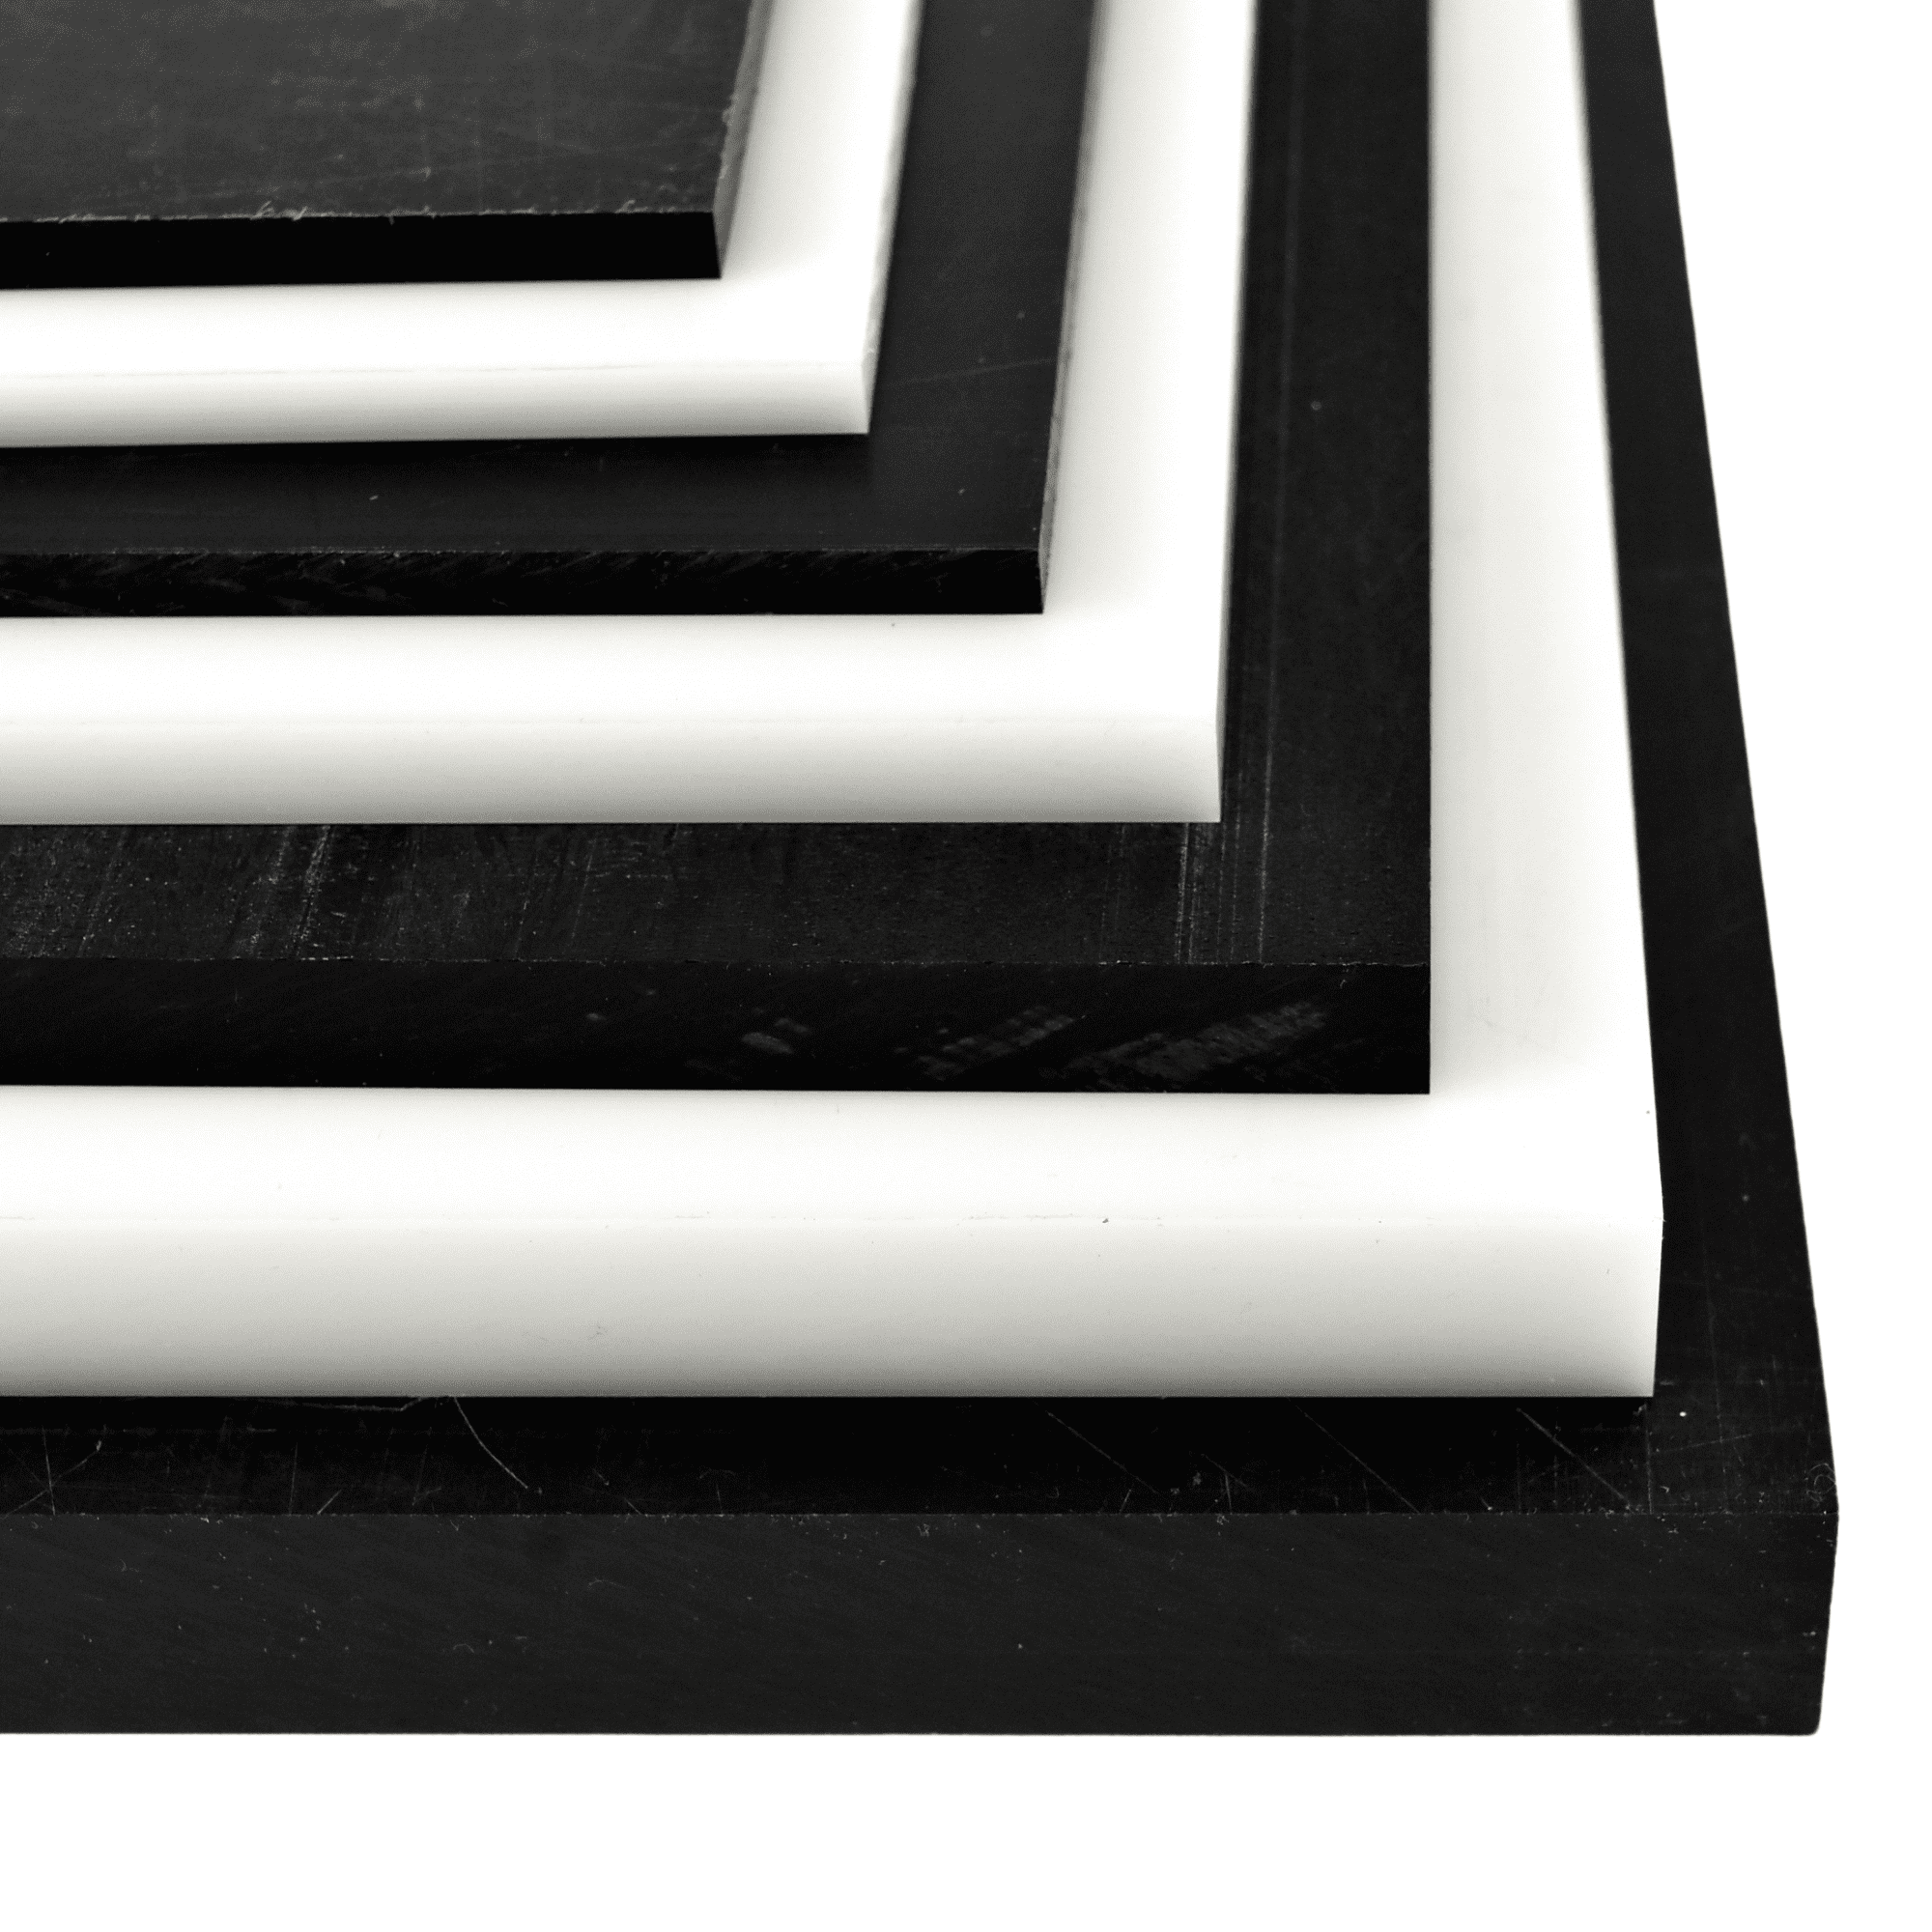 Acetal Plastic Sheet 1/4" x 12" x 12" Black Color Delrin 